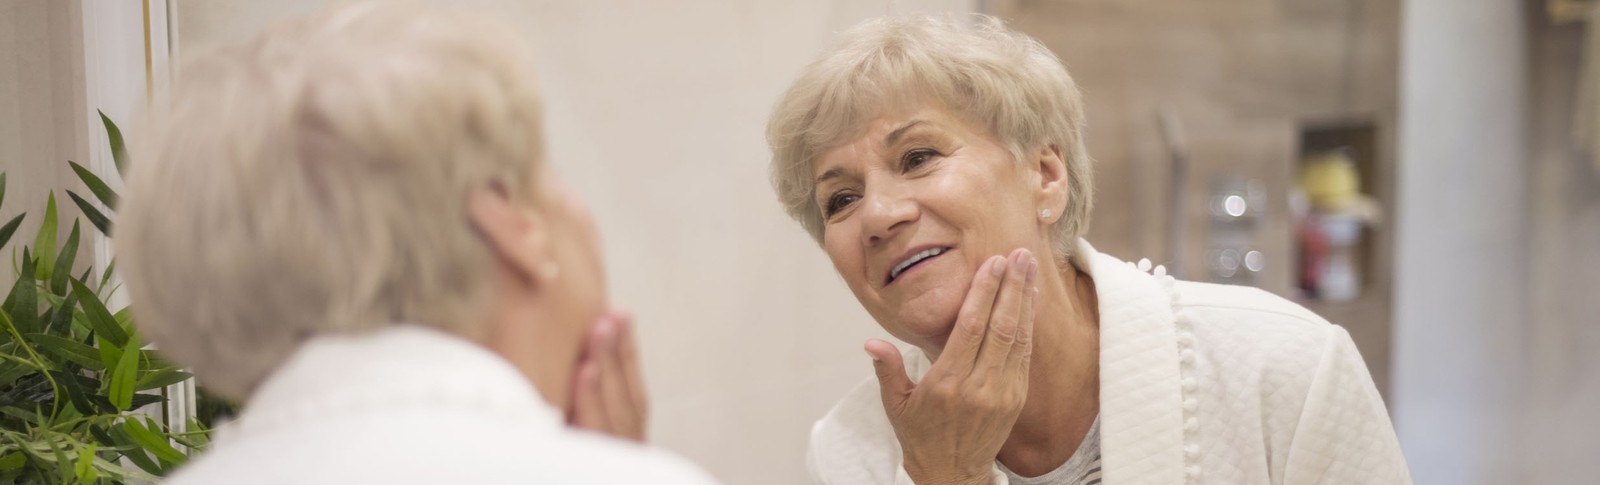 Ältere Frau betrachtet das Ergebnis ihrer Eigenfettunterspritzung im Gesicht in den Moser Kliniken im Spiegel